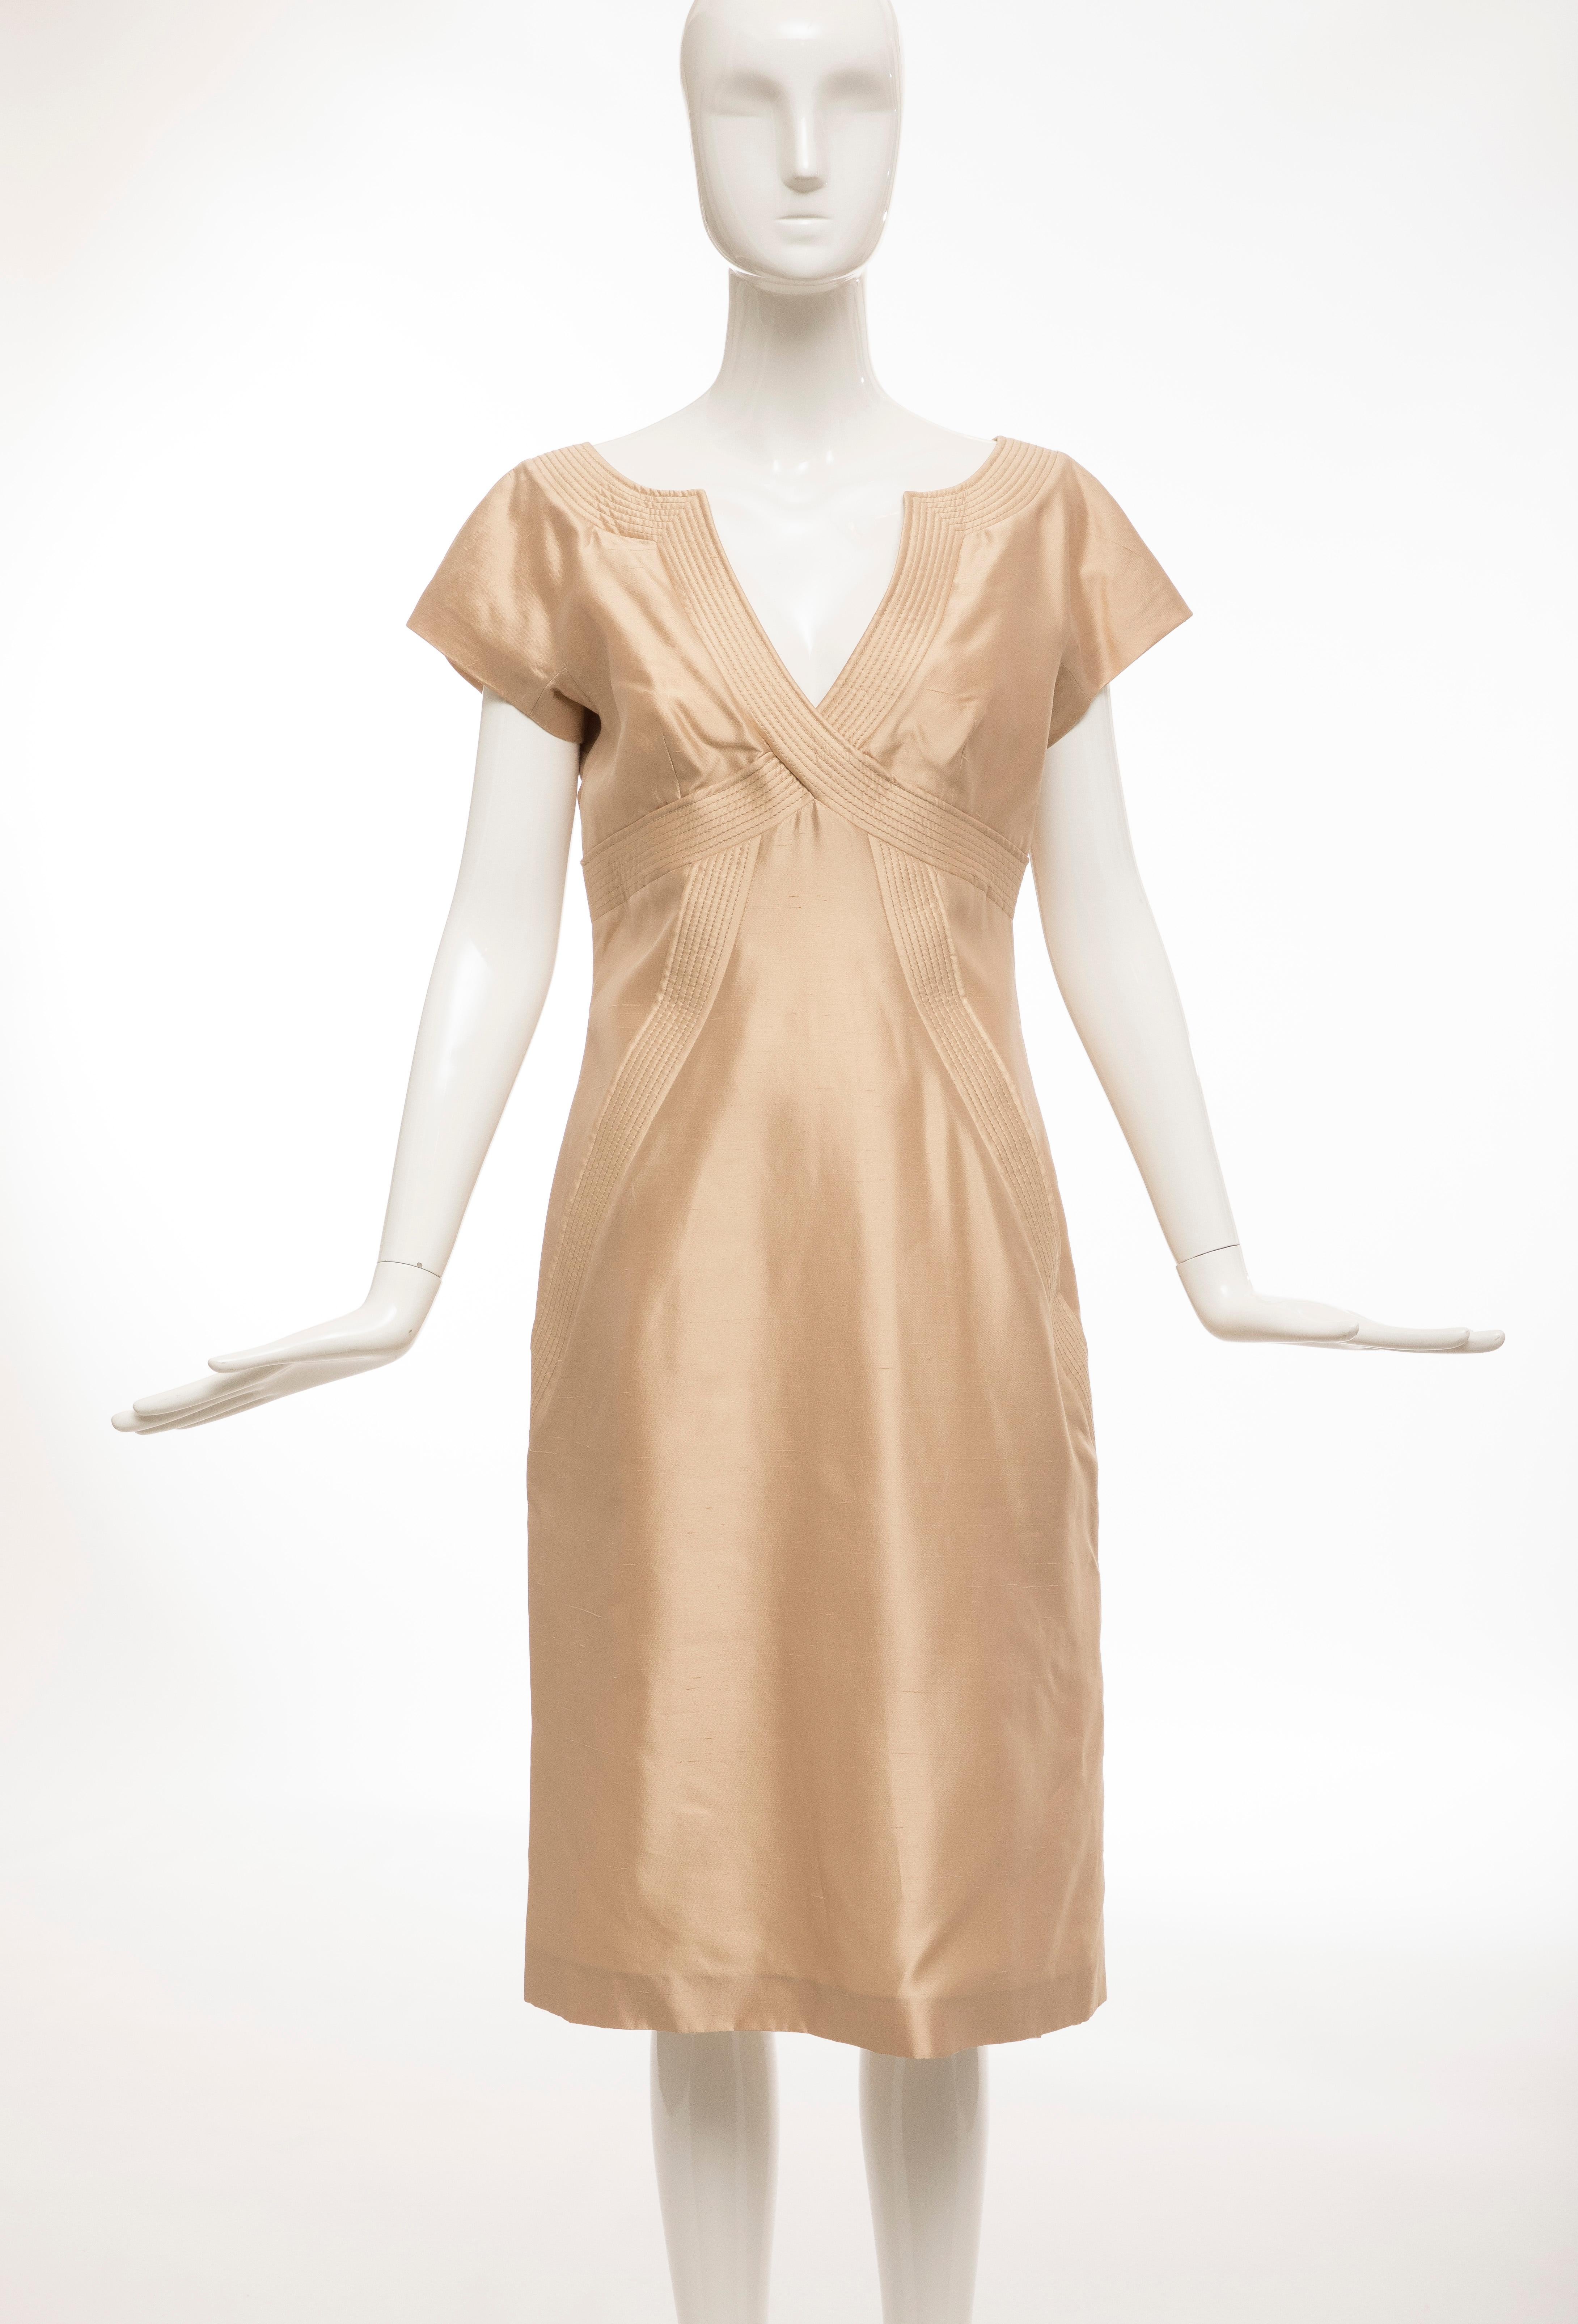 Alexander McQueen, Spring 2006 silk evening dress with back zipper and fully lined in silk. 

EU. 44, US. 8

Bust: 35, Waist: 31, Hips: 41, Length: 42